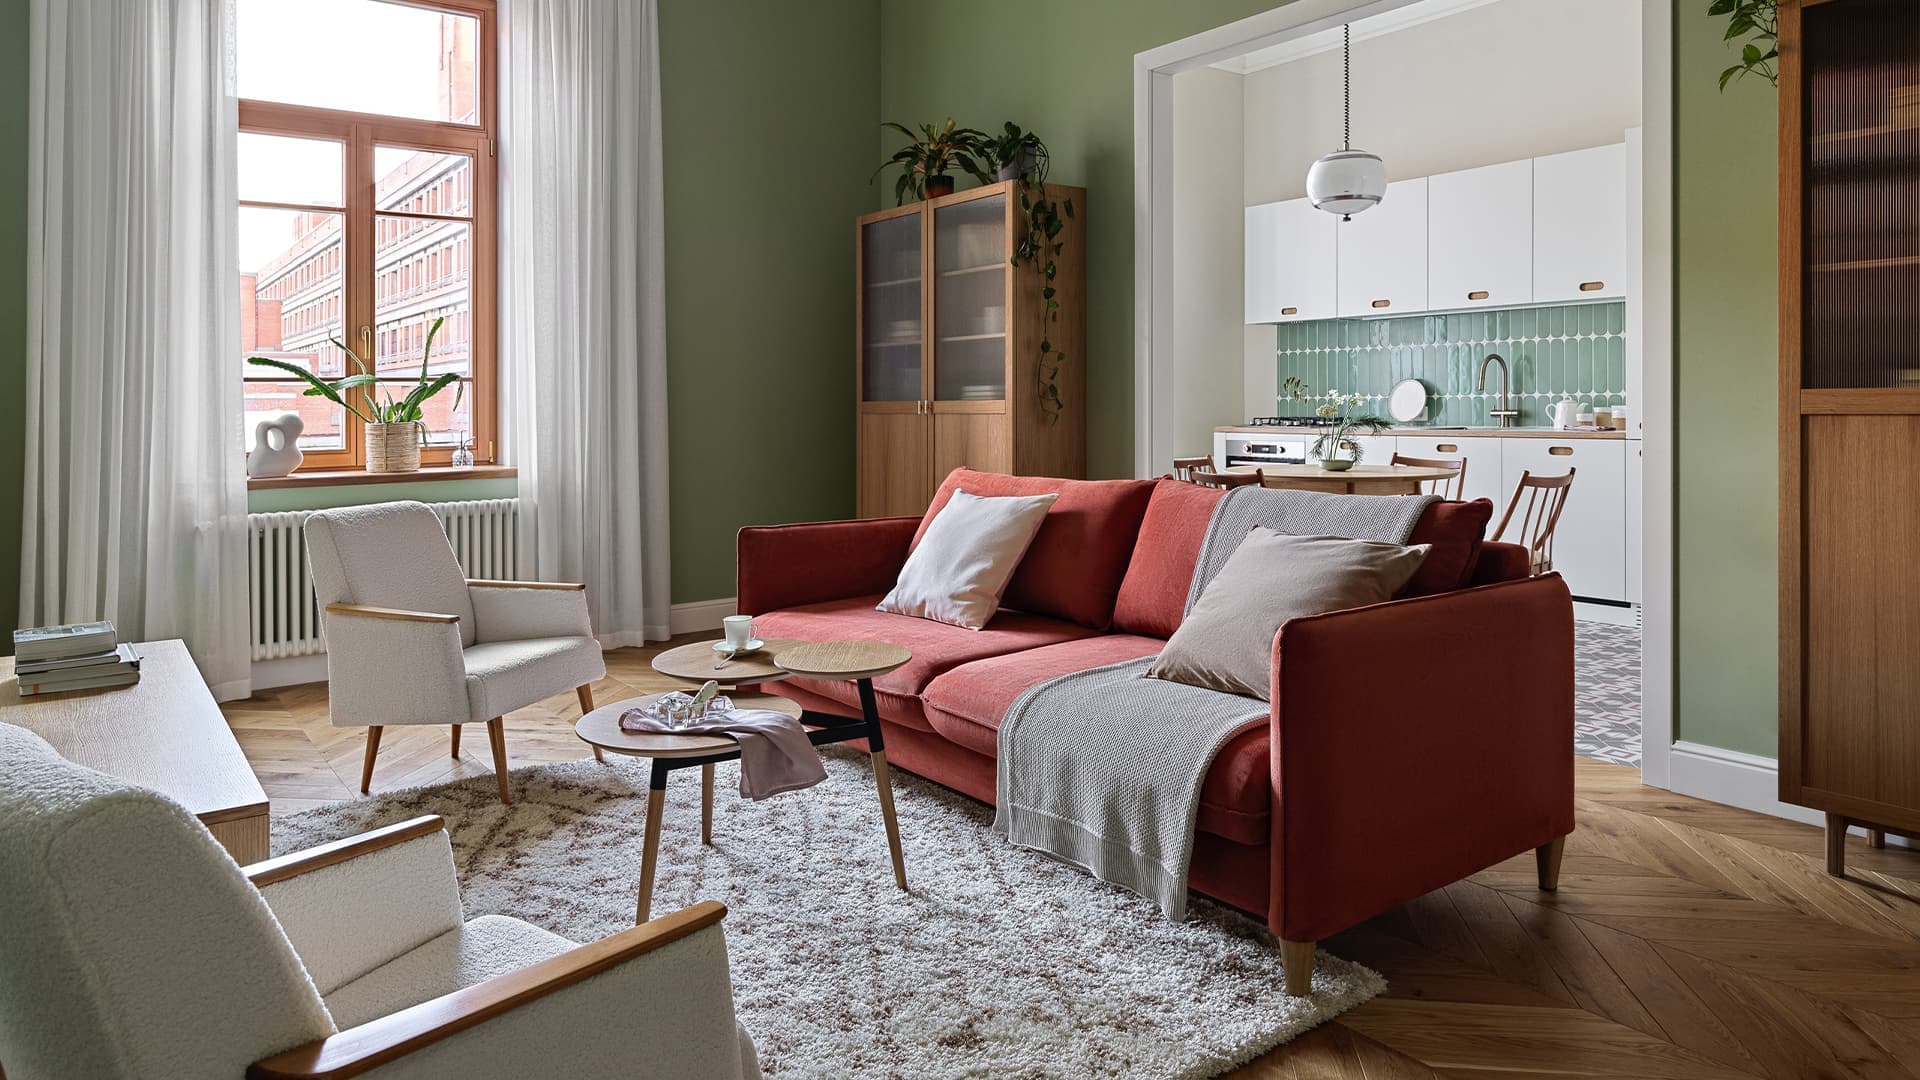 Расслабленный интерьер квартиры с винтажными люстрами и мебелью из фанеры — проект Анастасии Заркуа